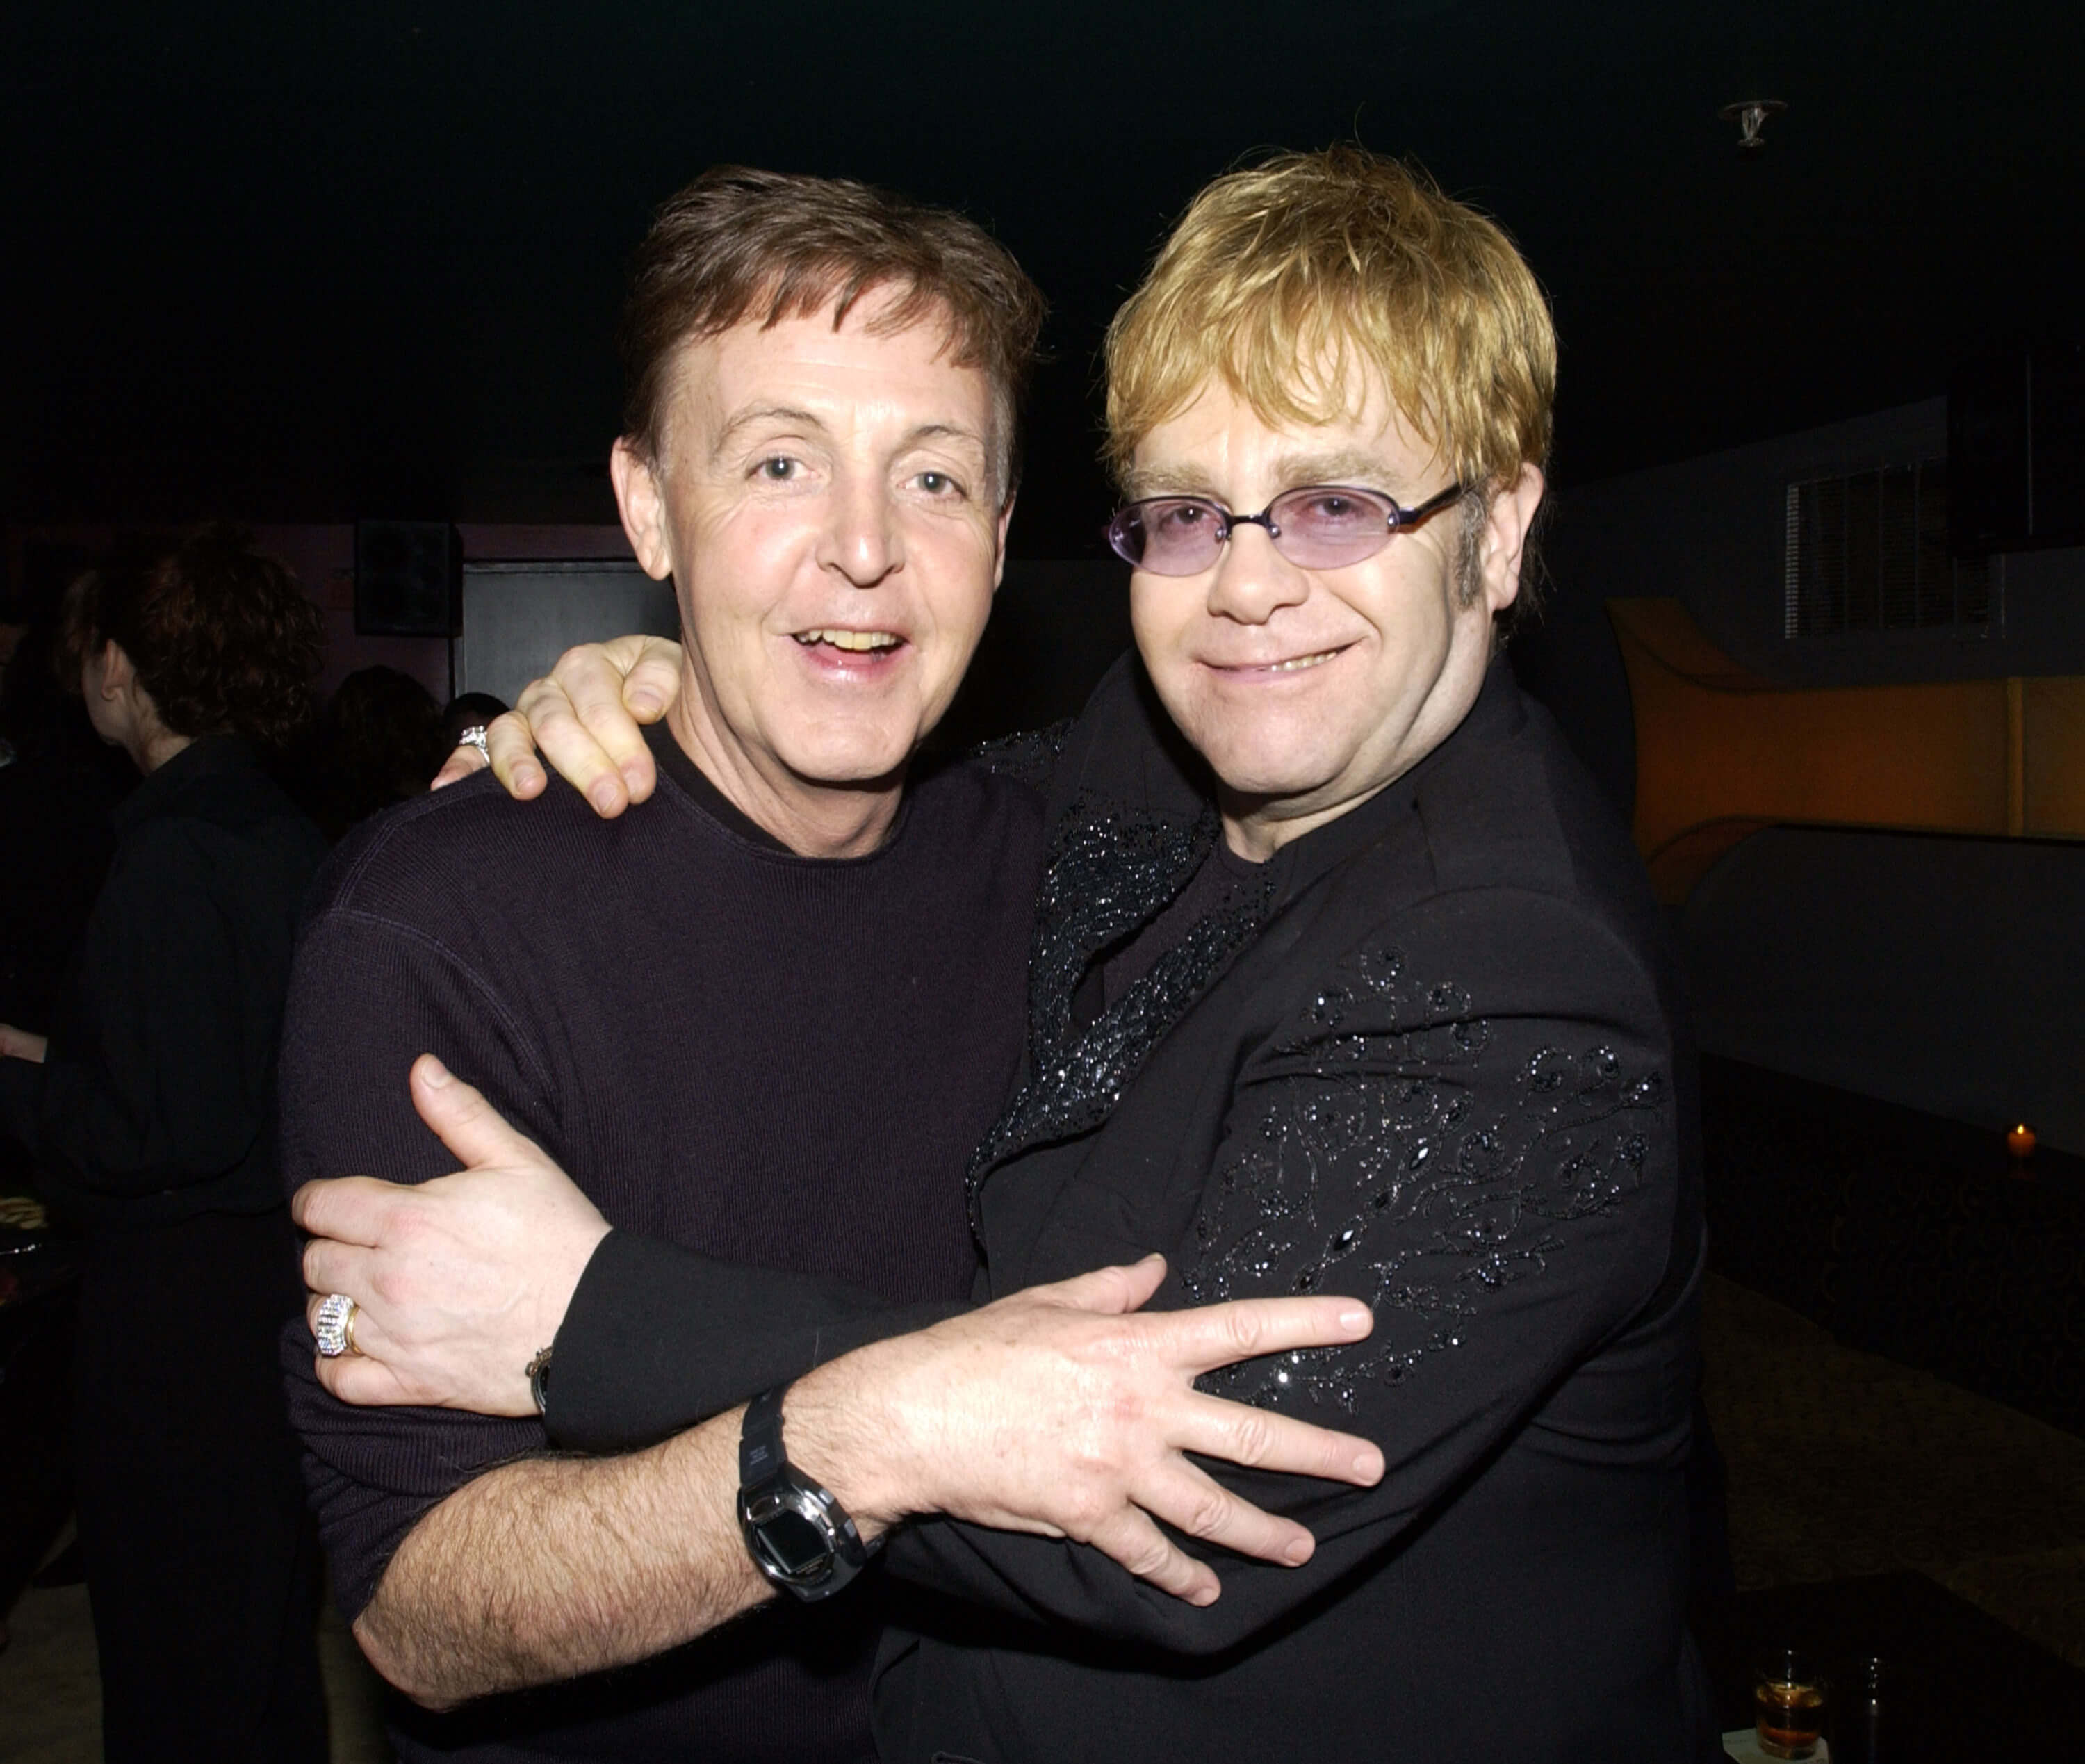 Paul McCartney putting his arm around "Daniel" singer Elton John